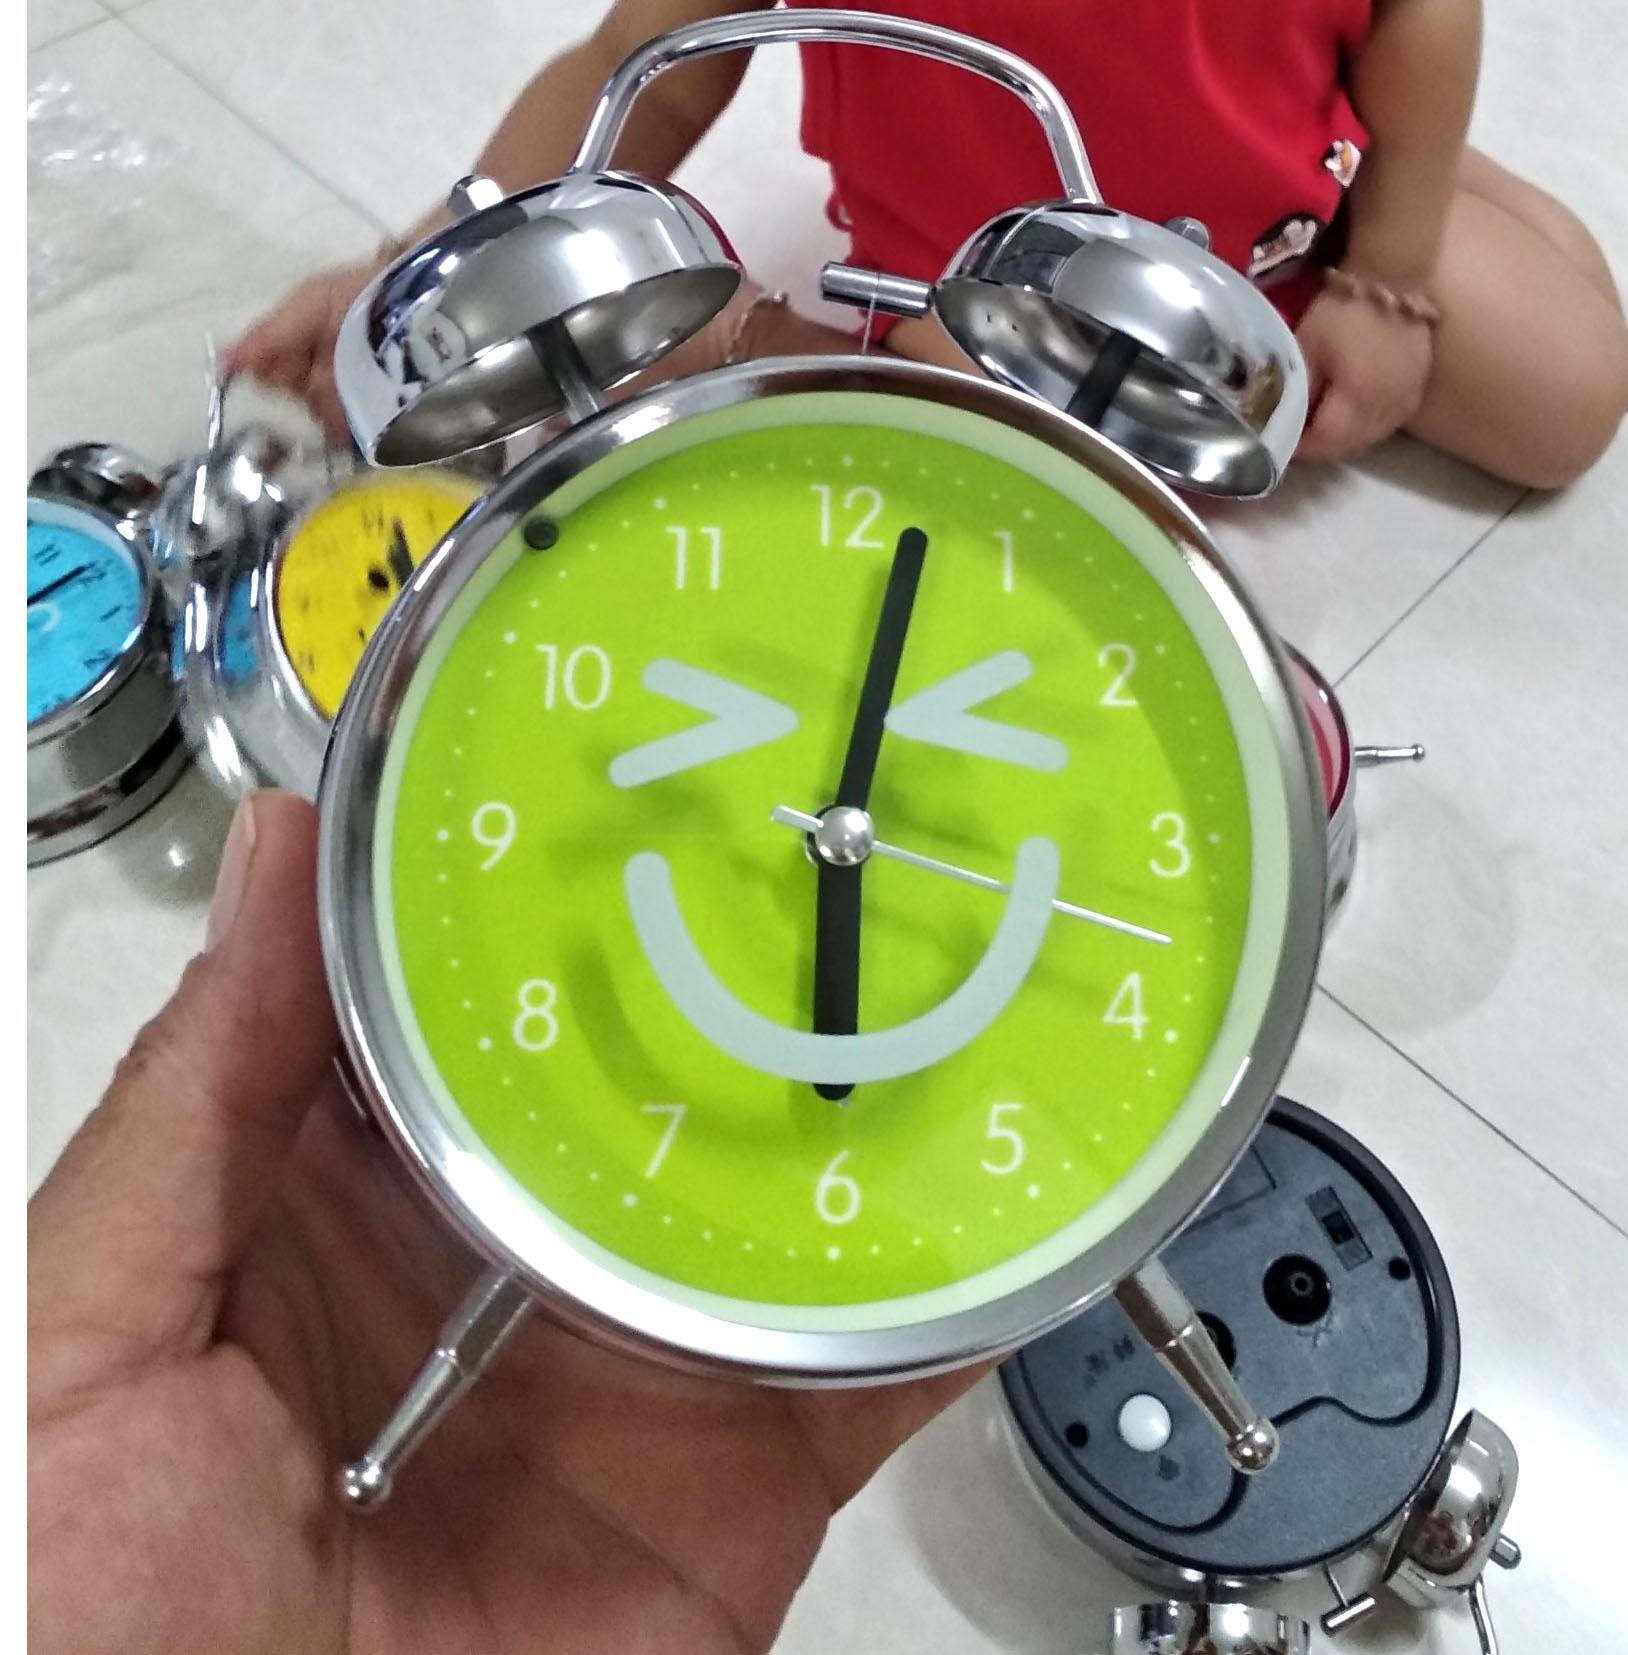 Đồng hồ báo thức lớn 2 chuông inox 16x11.5.5.5cm